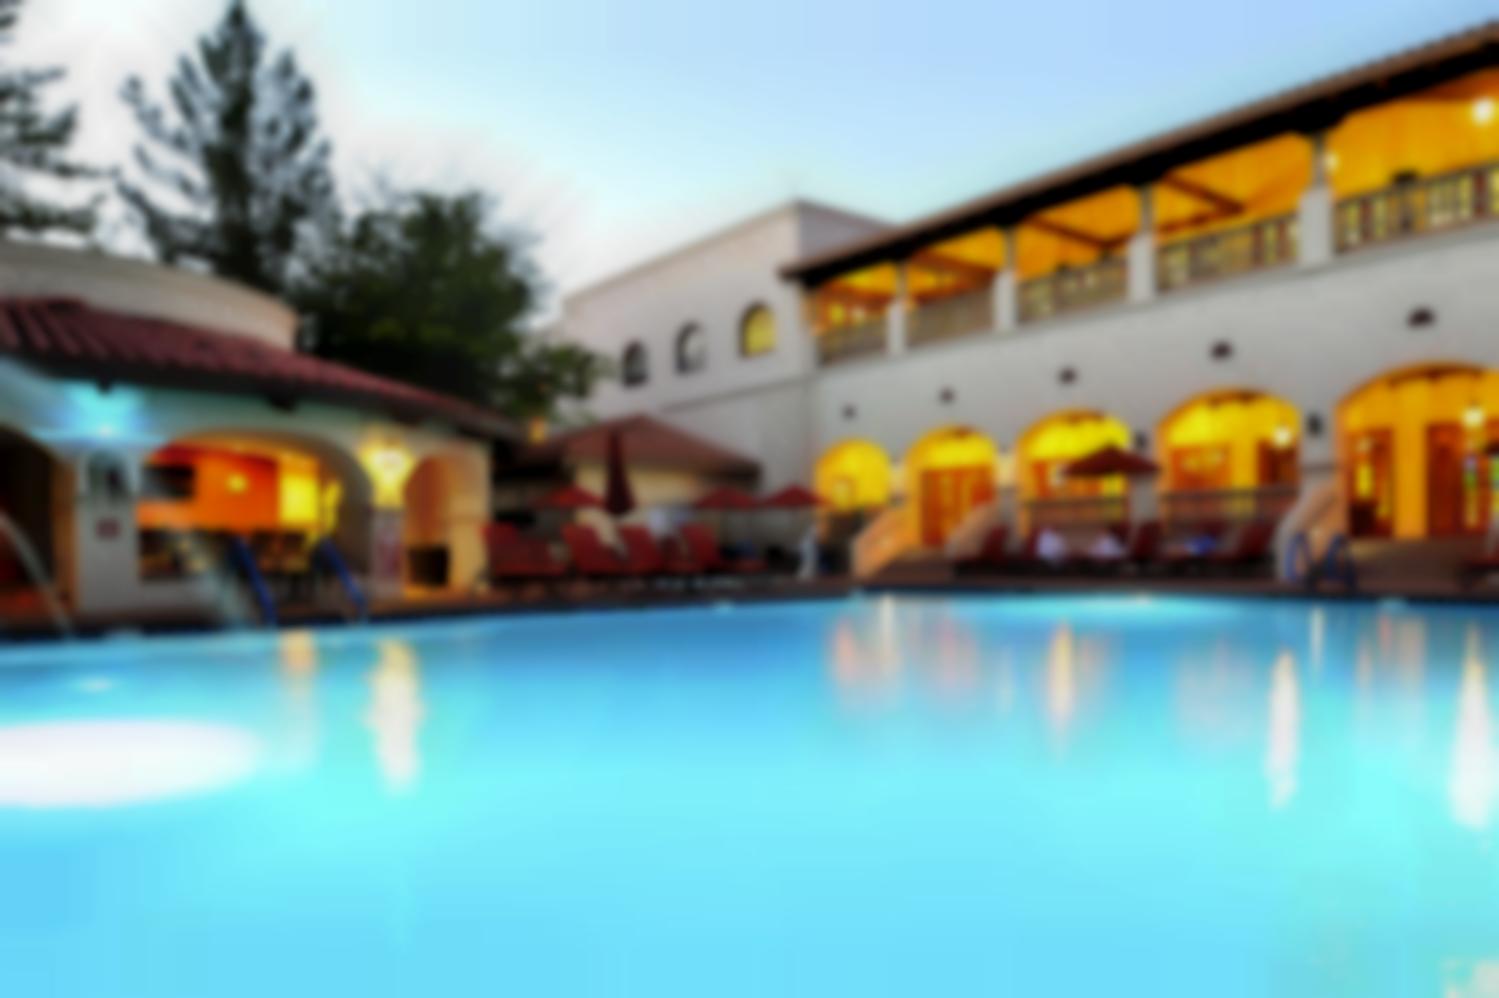 Los Abrigados Resort and Spa